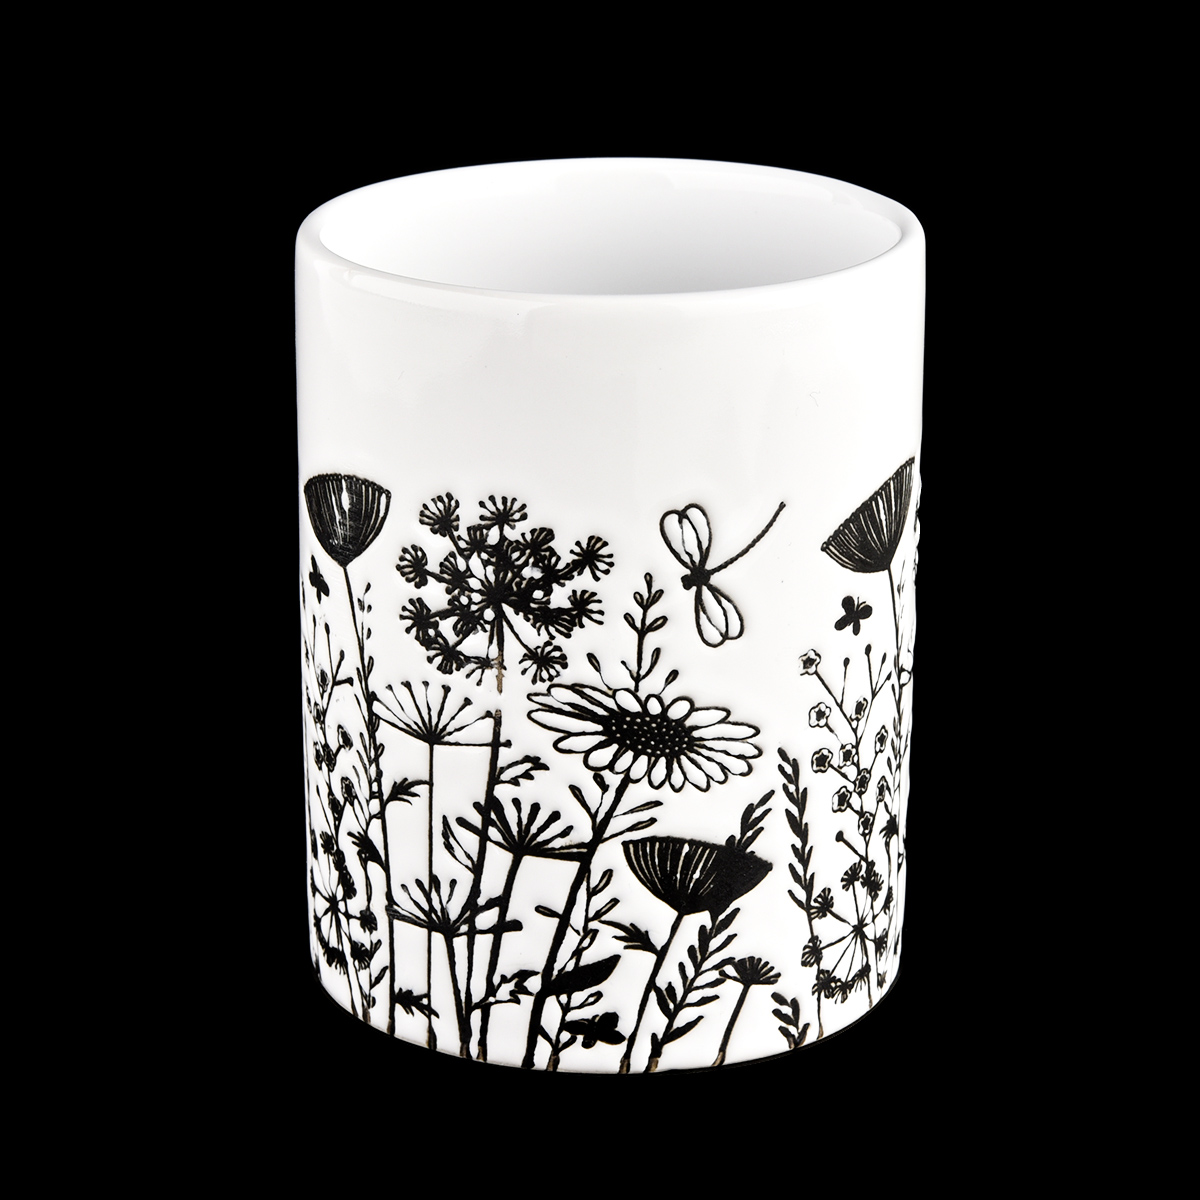 12 oz bílá keramická nádoba s dekorativním černým tištěným květinovým vzorem